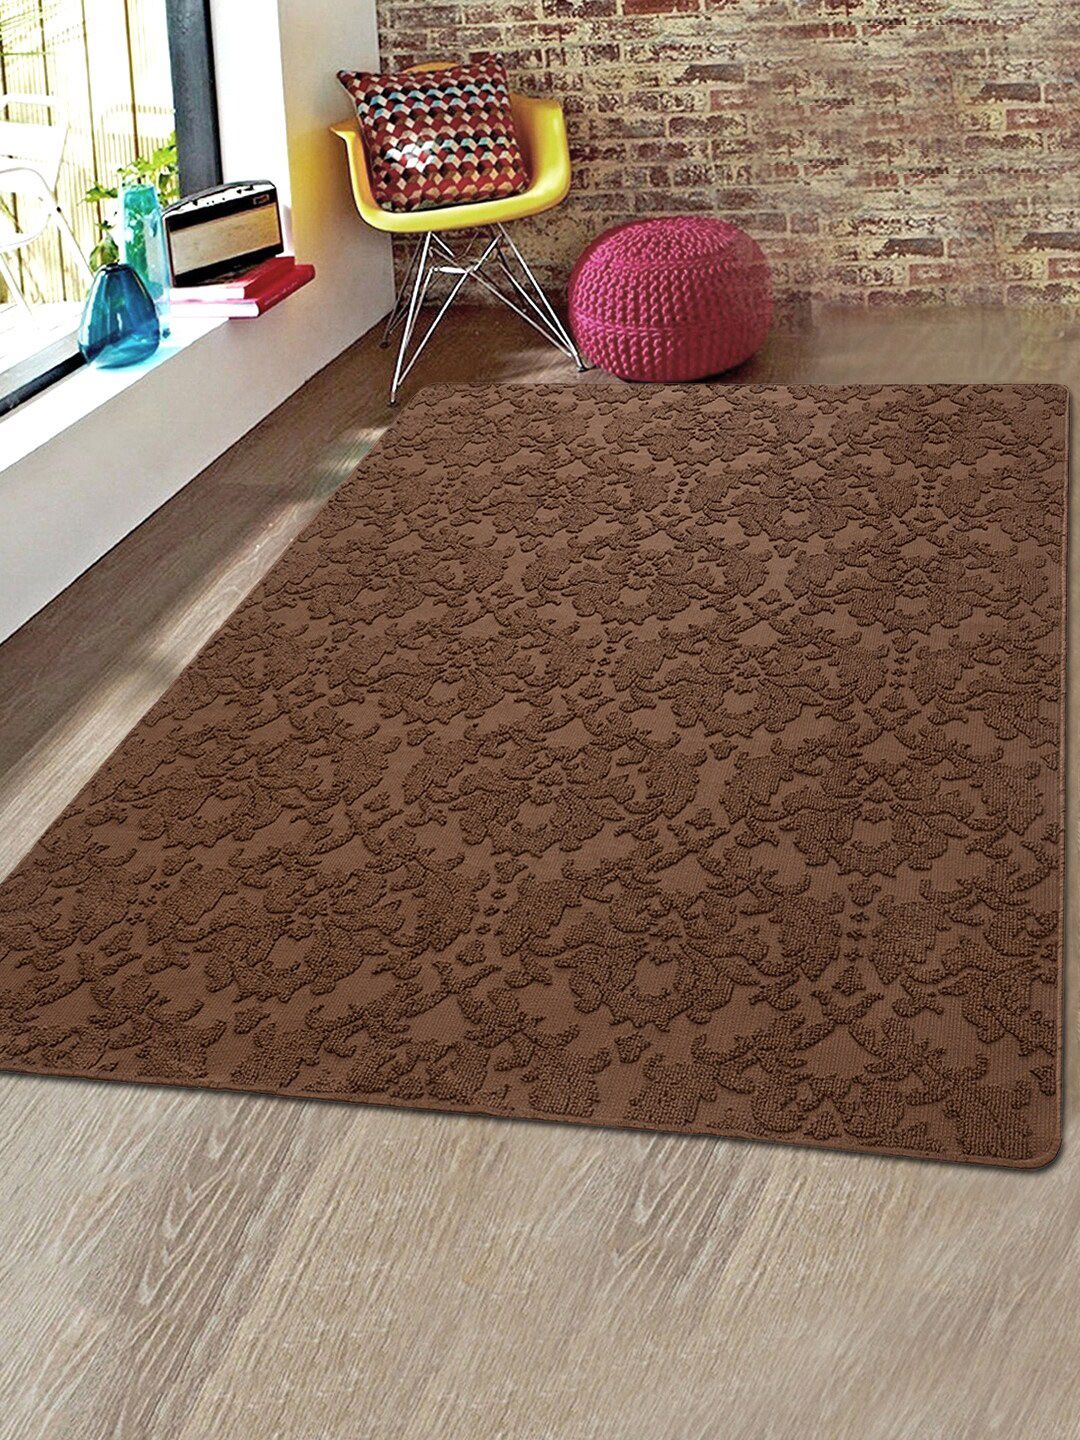 Saral Home Brown Self-Design Microfiber Anti-Skid Carpet Price in India